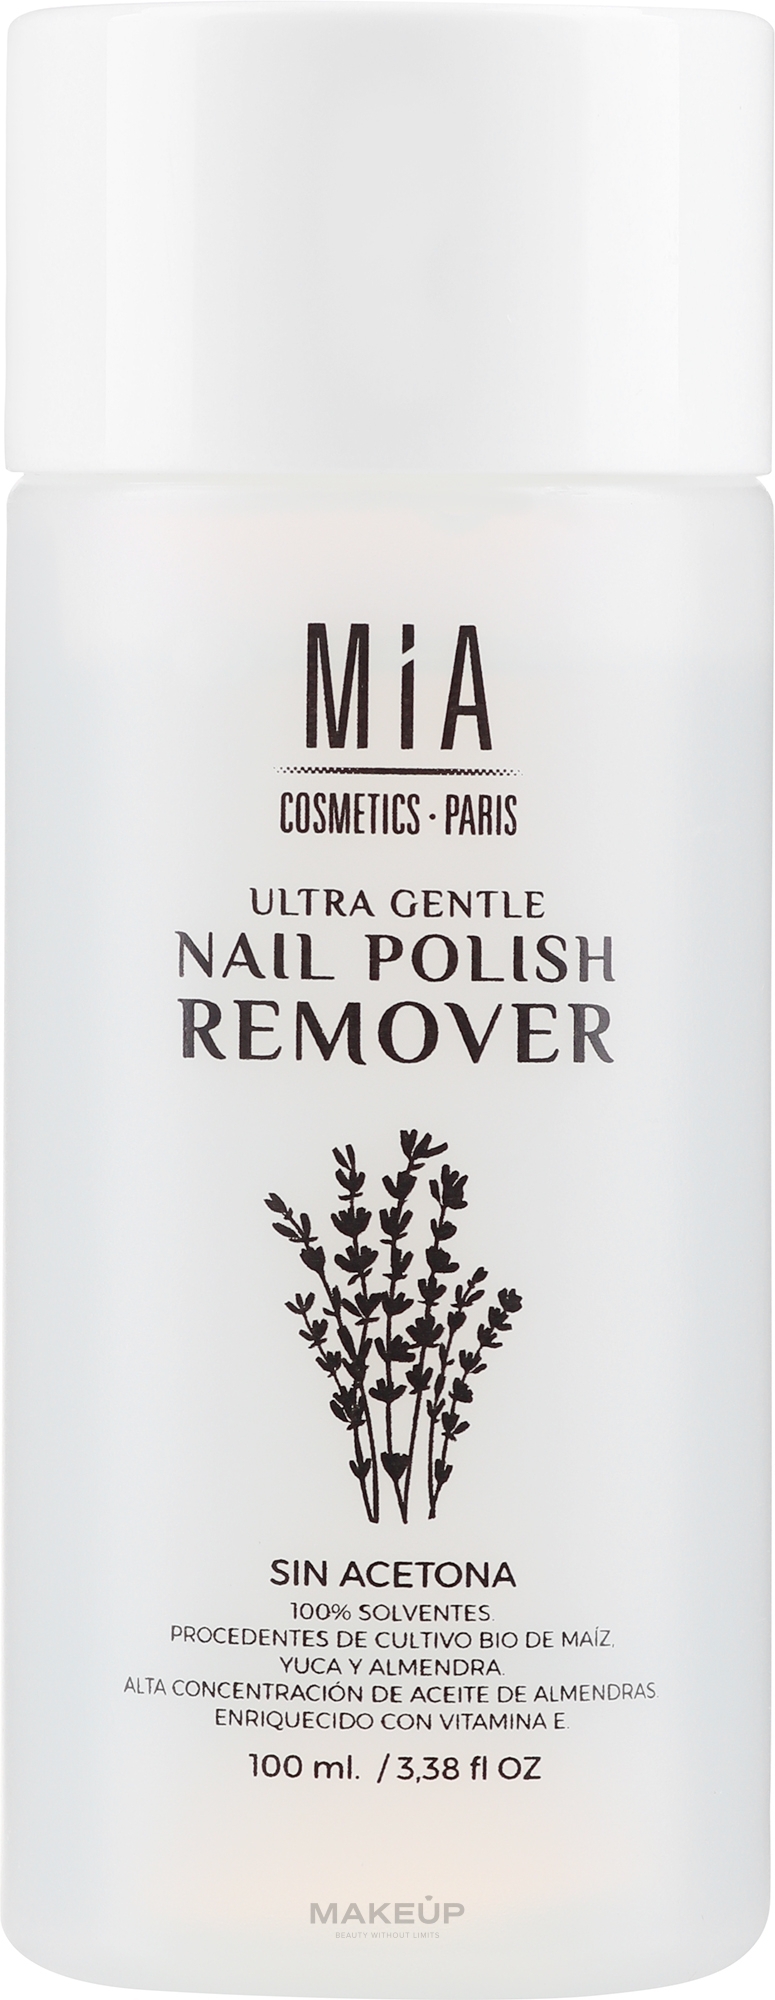 Zmywacz do paznokci - Mia Cosmetics Paris Ultra Gentle Nail Polish Remover — Zdjęcie 100 ml